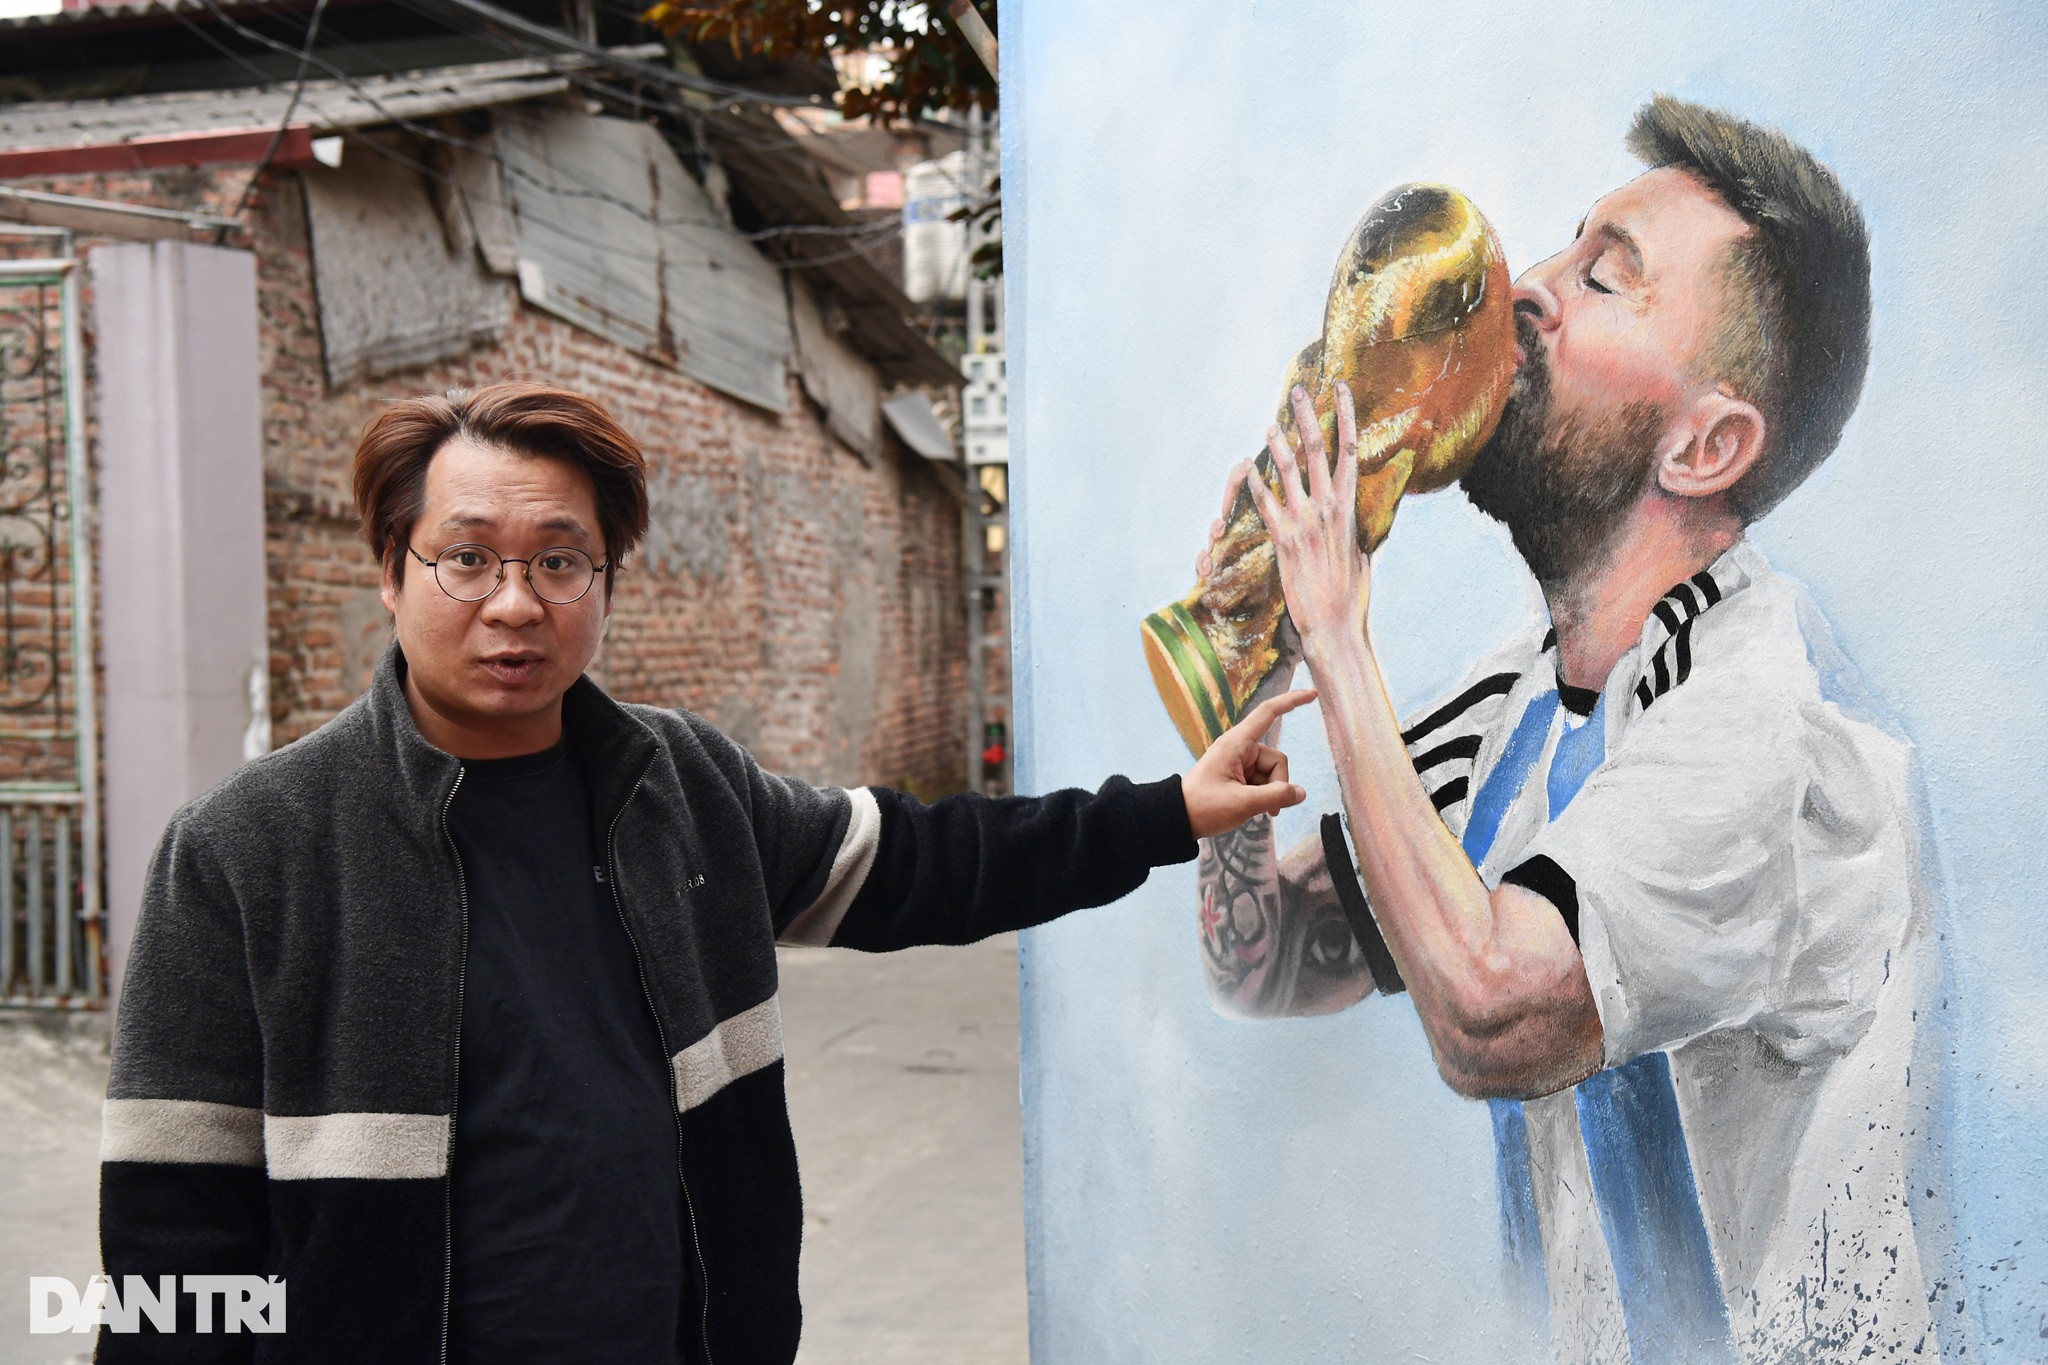 Thầy giáo vẽ Messi: Hãy khám phá sự tài năng và khéo léo của một thầy giáo vẽ bằng cách xem những hình ảnh về việc ông ta vẽ siêu sao bóng đá Lionel Messi. Những bức tranh sáng tạo và đầy phong cách này sẽ khiến bạn cảm thấy ngạc nhiên và thích thú.